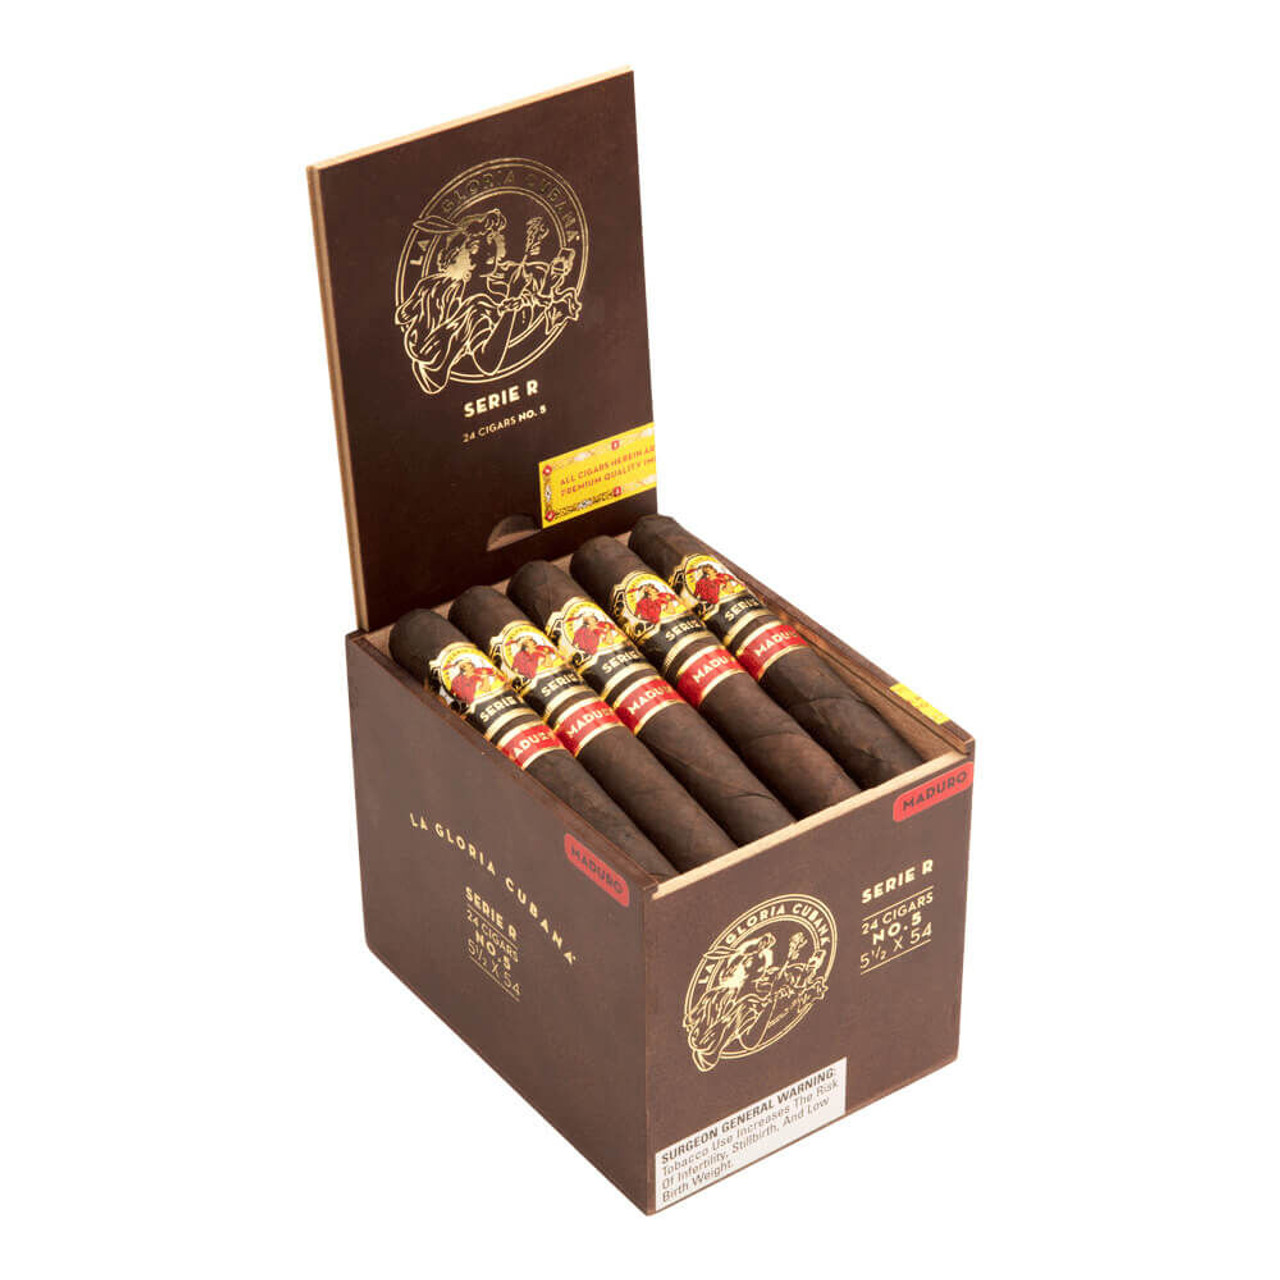 La Gloria Cubana Serie R No. 5 Maduro Cigars - 5.5 x 54 (Box of 24) Open